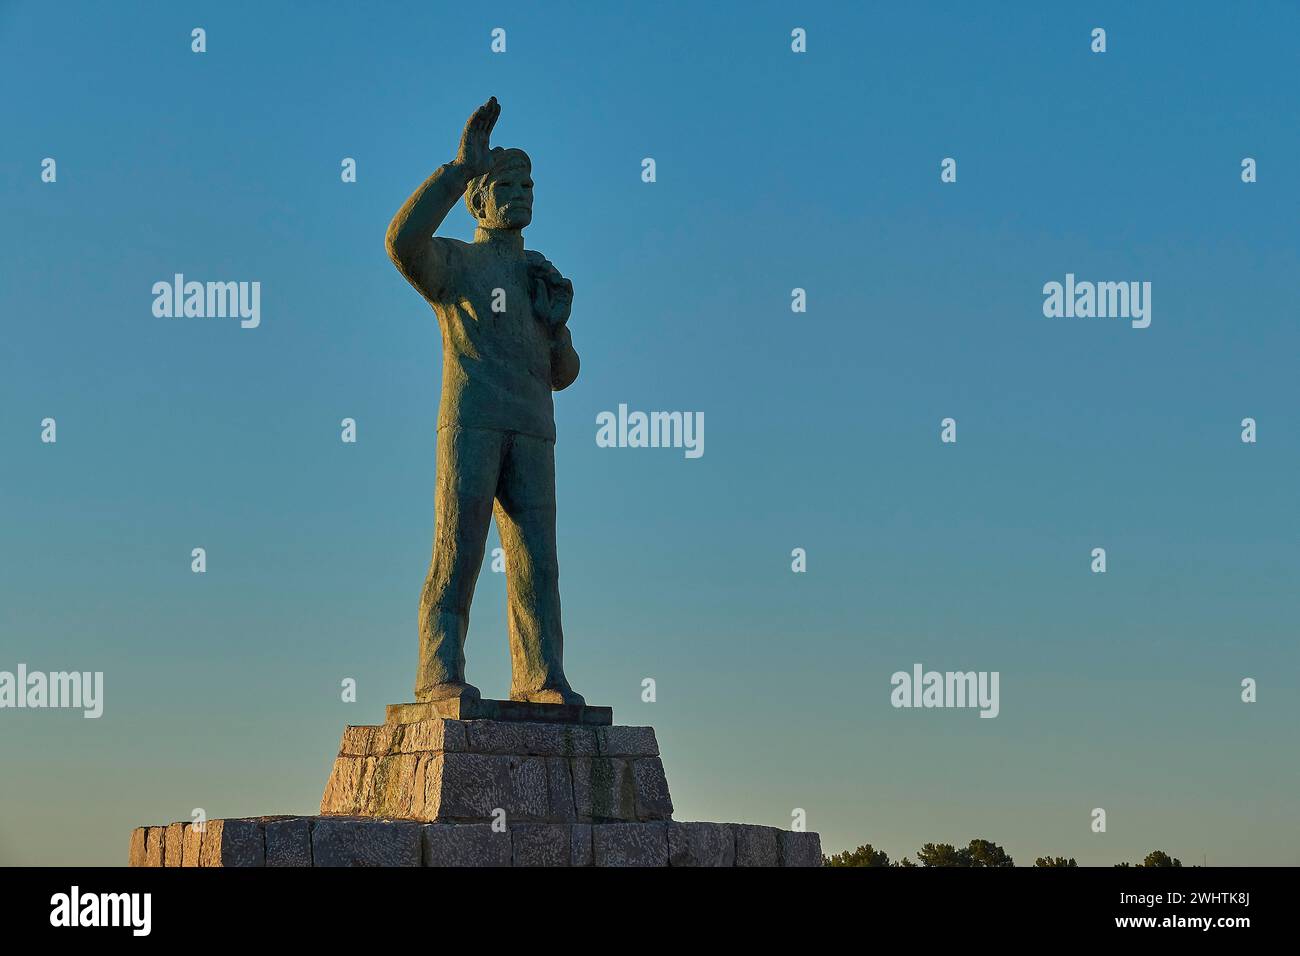 Statua di un uomo con il braccio teso verso il cielo all'alba, statua di bronzo di un marinaio che ondeggia in memoria delle anime perdute in mare, Gythio, mani Foto Stock